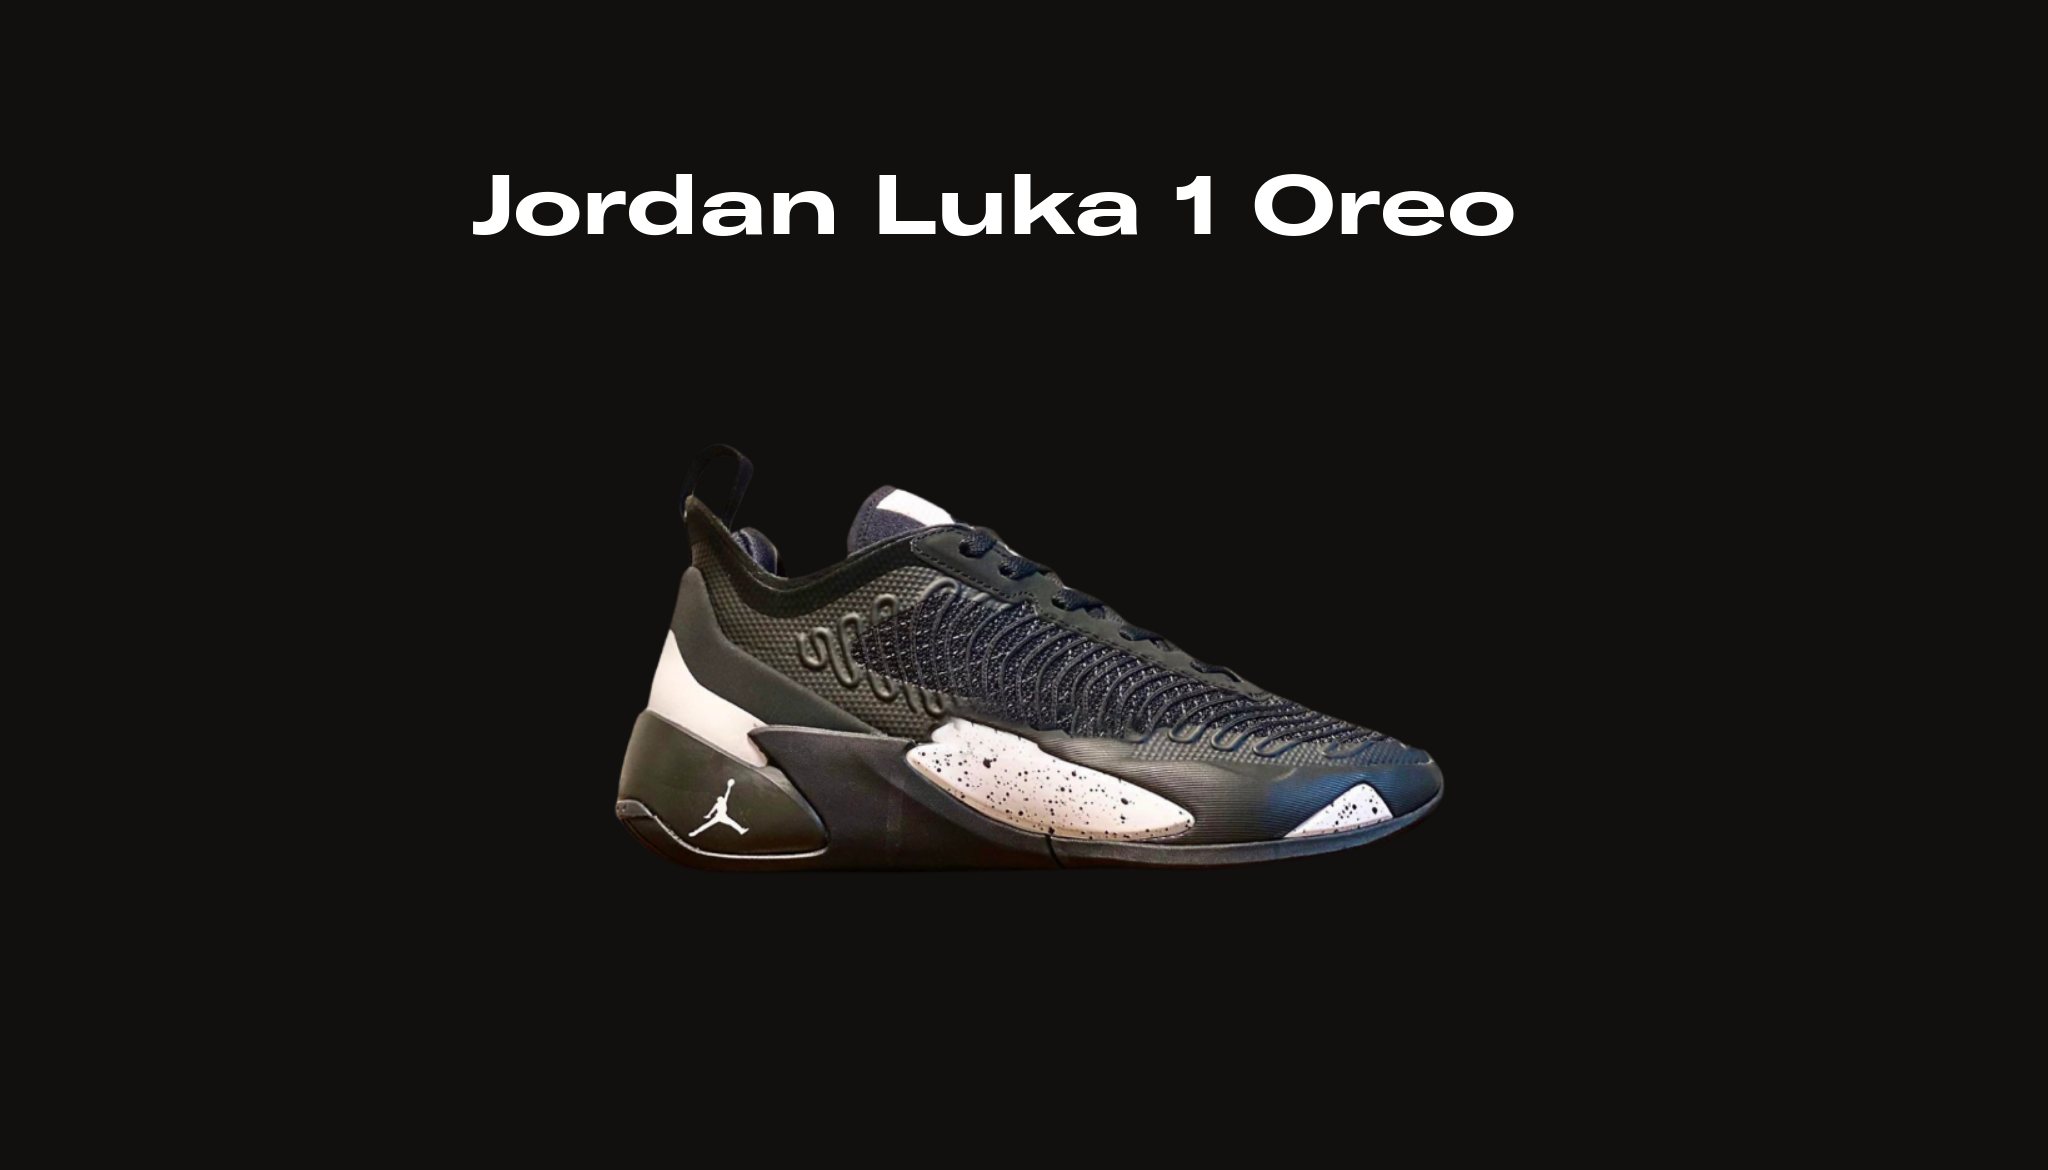 Jordan oreo jordan 1 Luka 1 Oreo, Raffles and Release Date | Sole Retriever